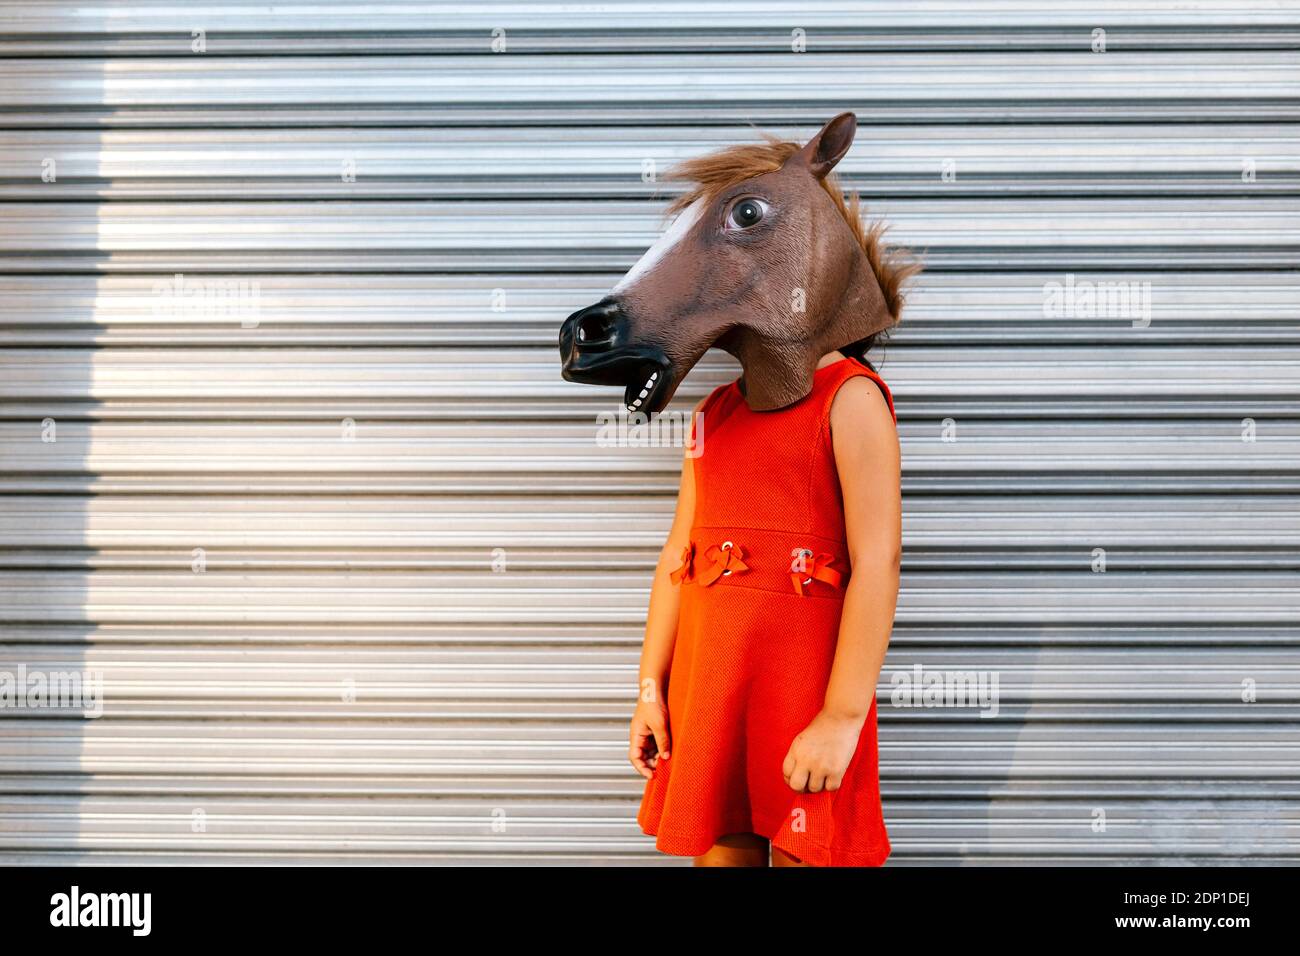 Cucciolata con la testa di un cavallo e un vestito rosso davanti all'otturatore in metallo Foto Stock